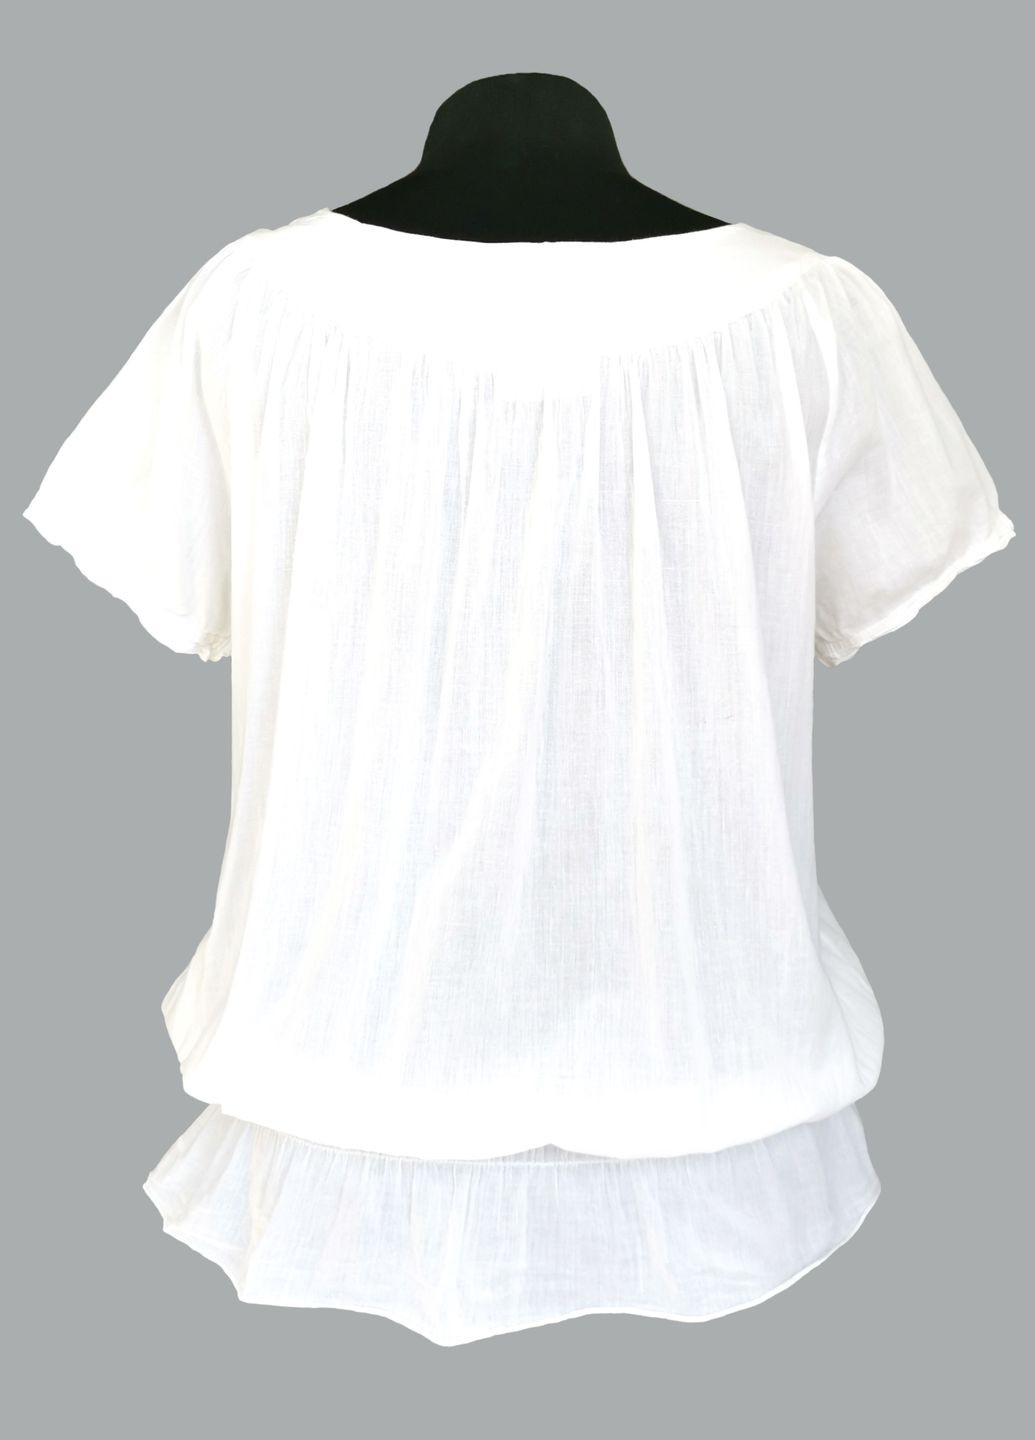 Белая блузка женская летняя хлопковая с коротким рукавом и кружевом индия белый free size Indiano